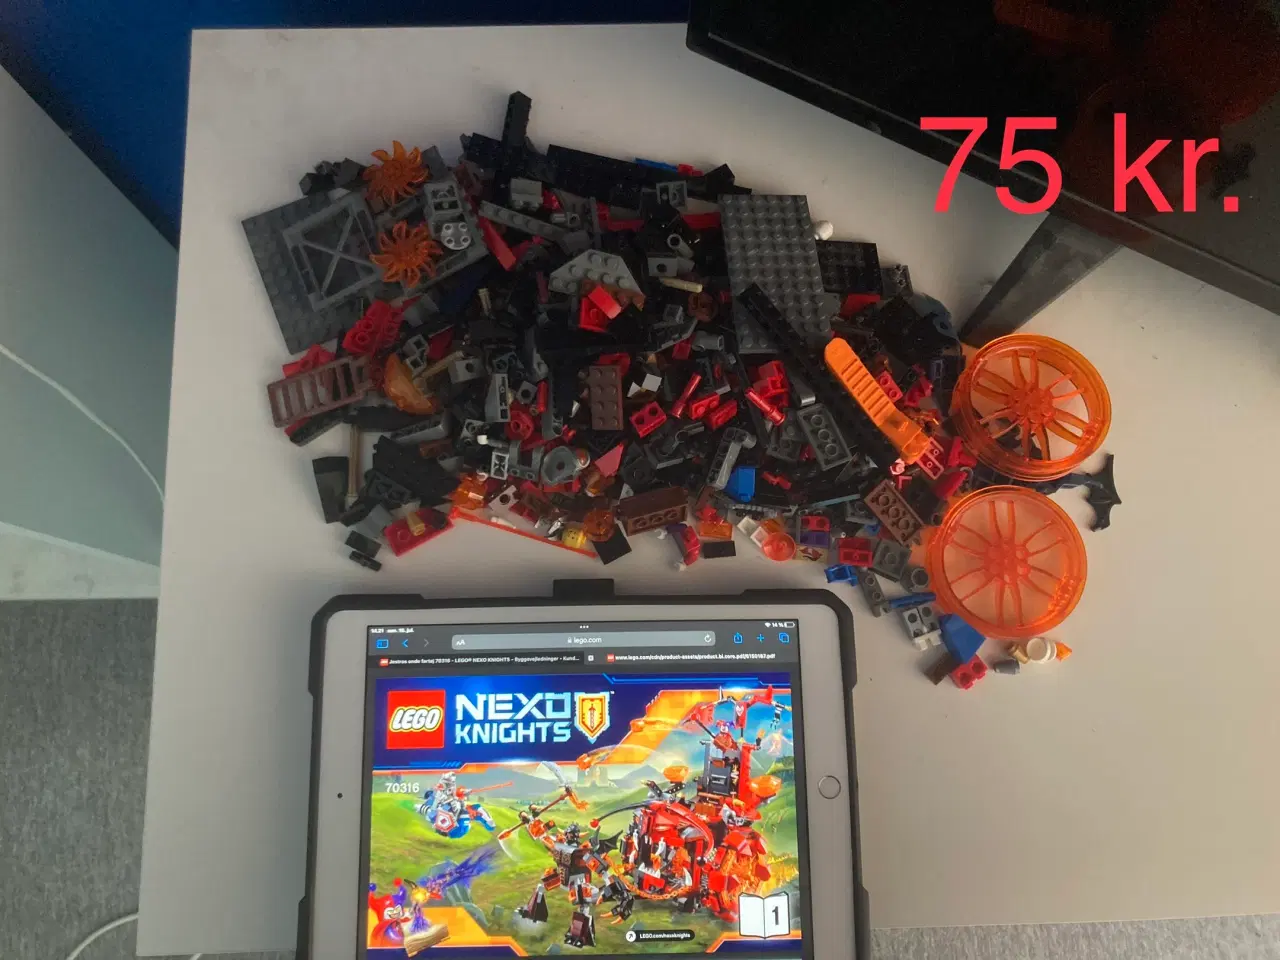 Billede 20 - Legosæt sælges (priserne er fra 5 kr. til 200 kr.)